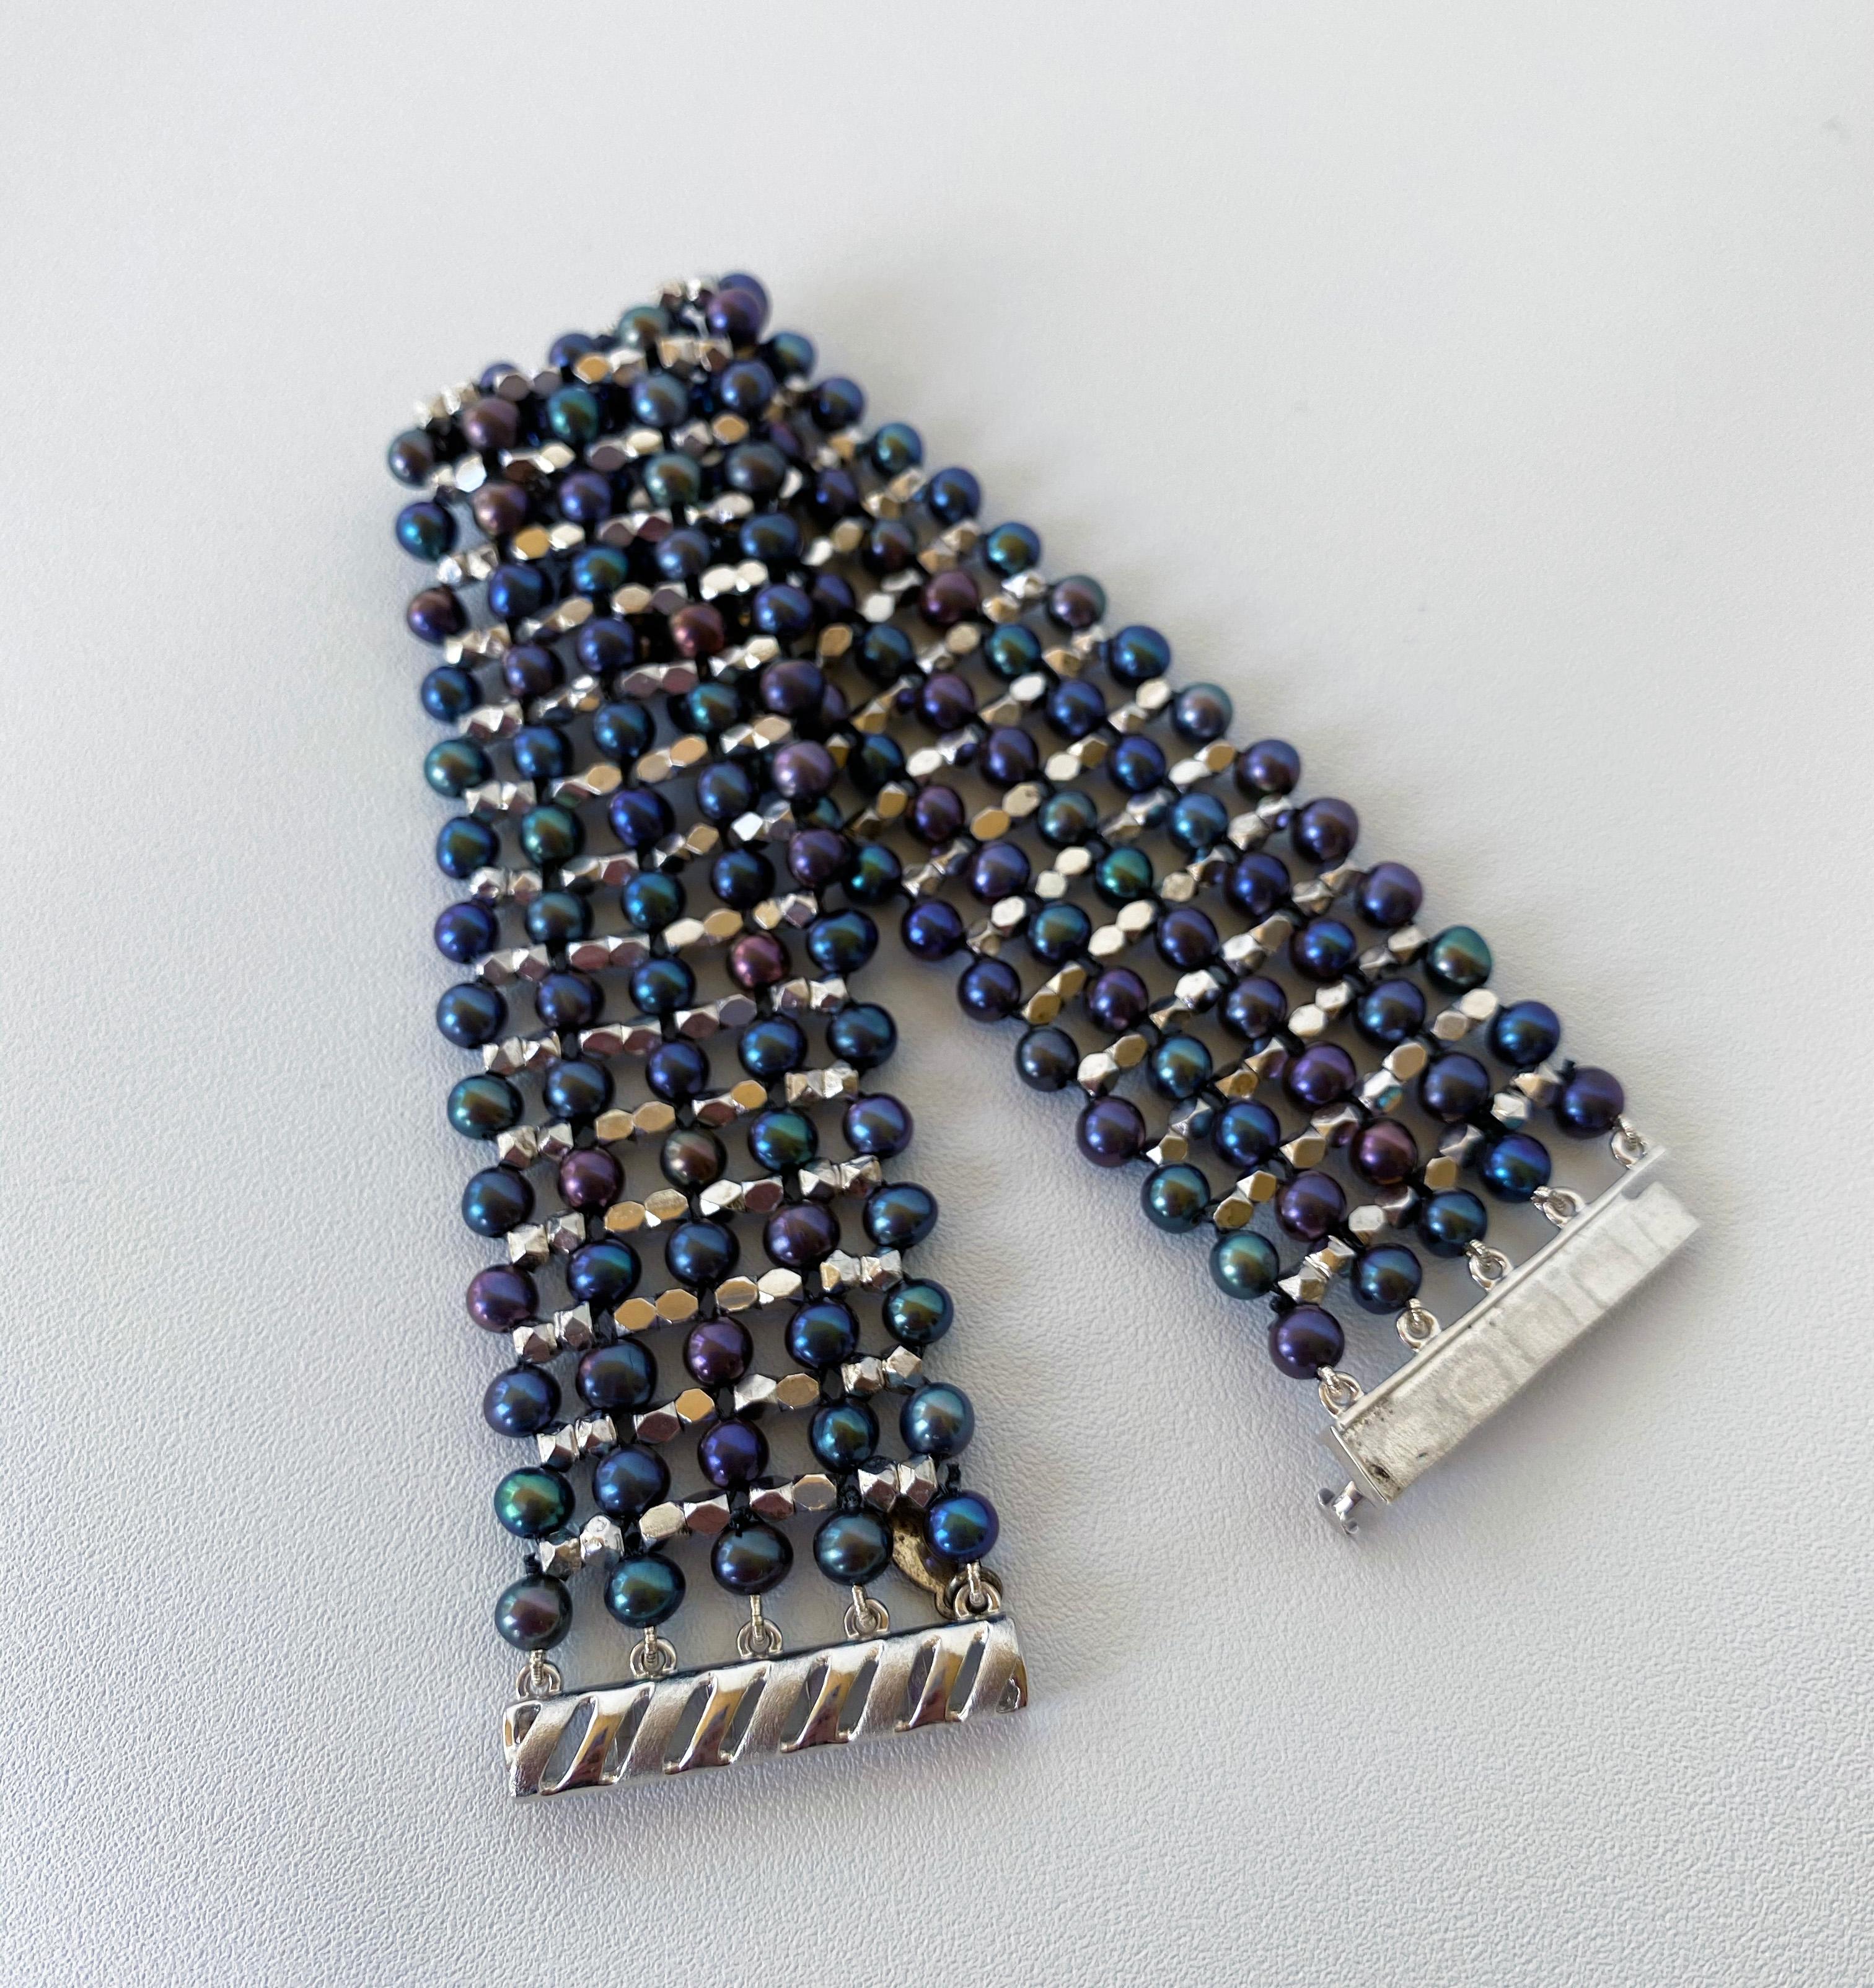 Dieses Manschettenarmband aus schwarzen Perlen und rhodiniertem Sterlingsilber wurde von Marina J. in aufwändiger Handarbeit gewebt. Durch die schwarzen Perlen sind rhodinierte Sterlingsilberperlen gewebt, die dem Armband Dimension verleihen. Die